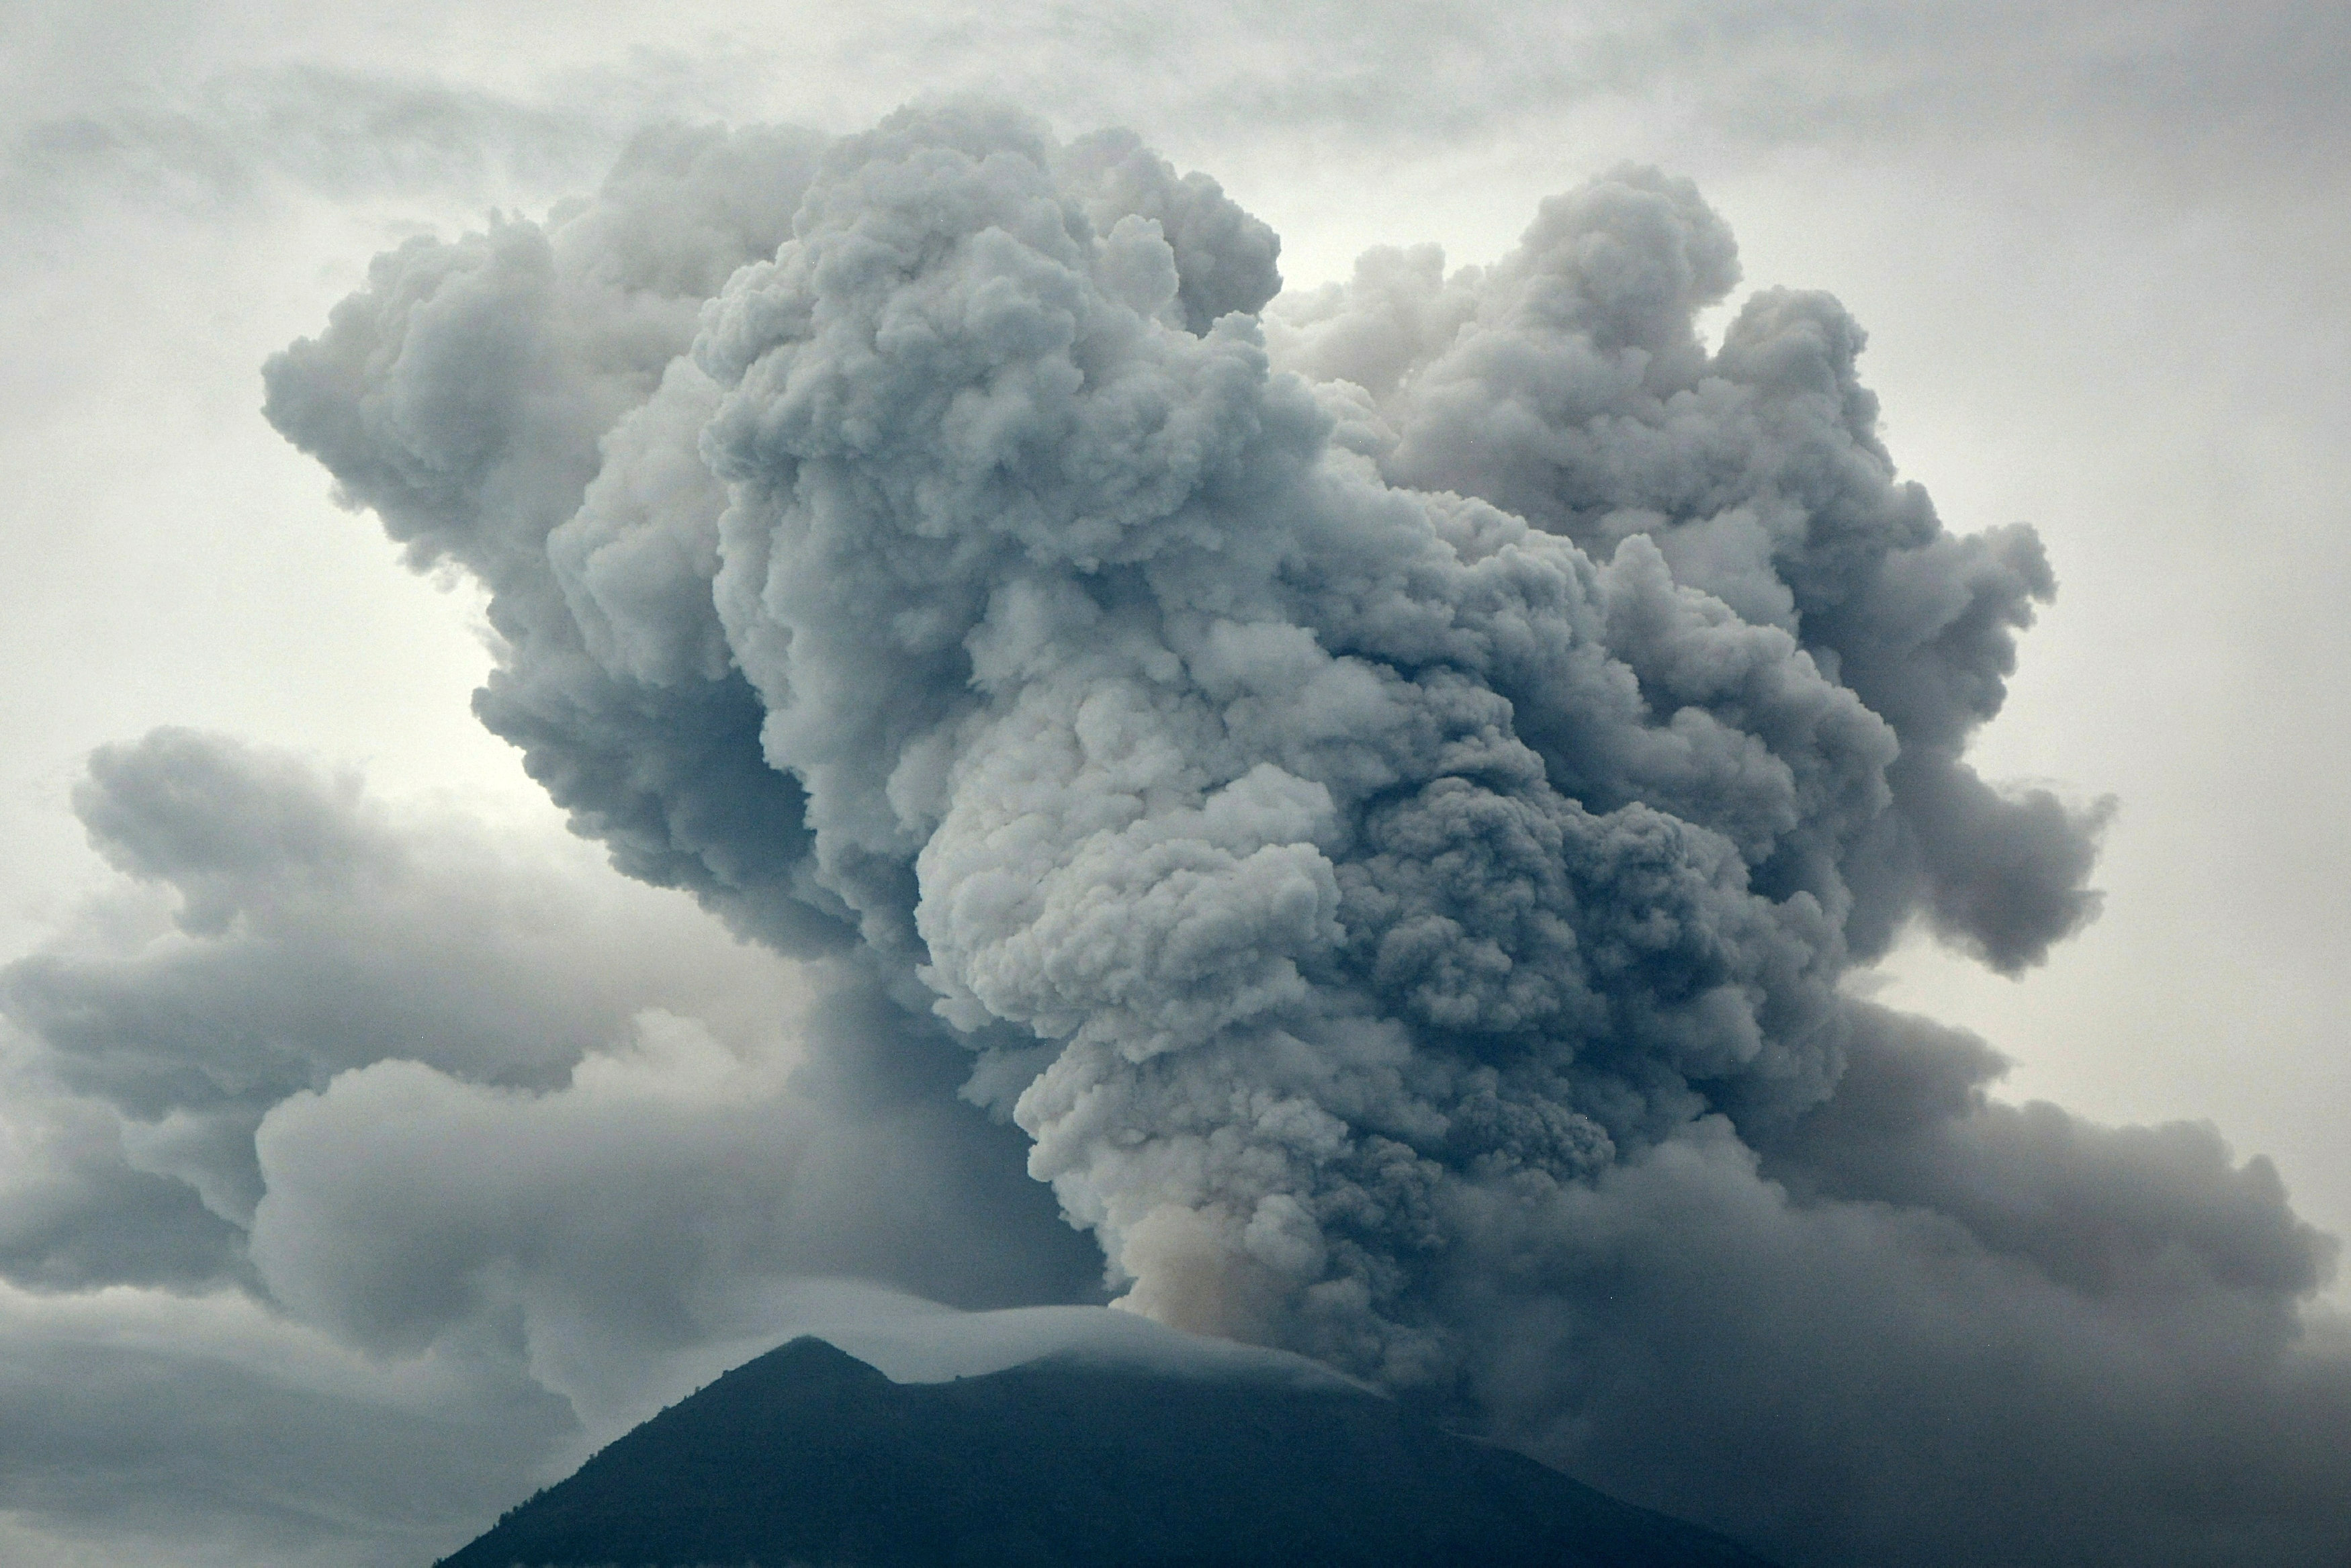 Evacuation centres, hotels fill up as Bali volcano may erupt at any moment